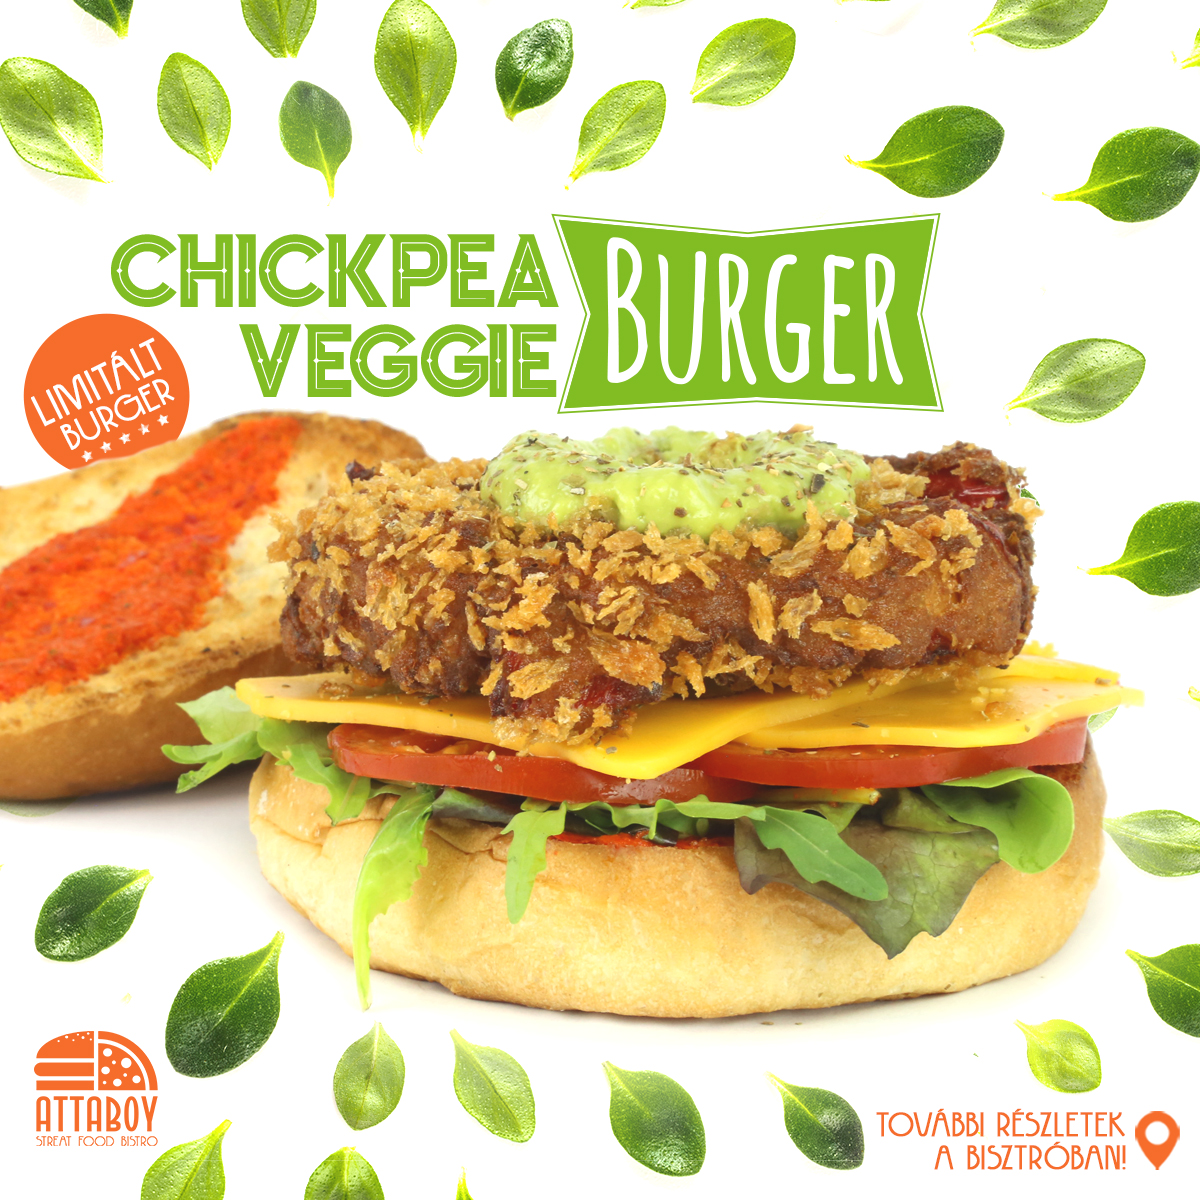 ATTABOY_CHICKPEA_veggie_burger_insta_facebook